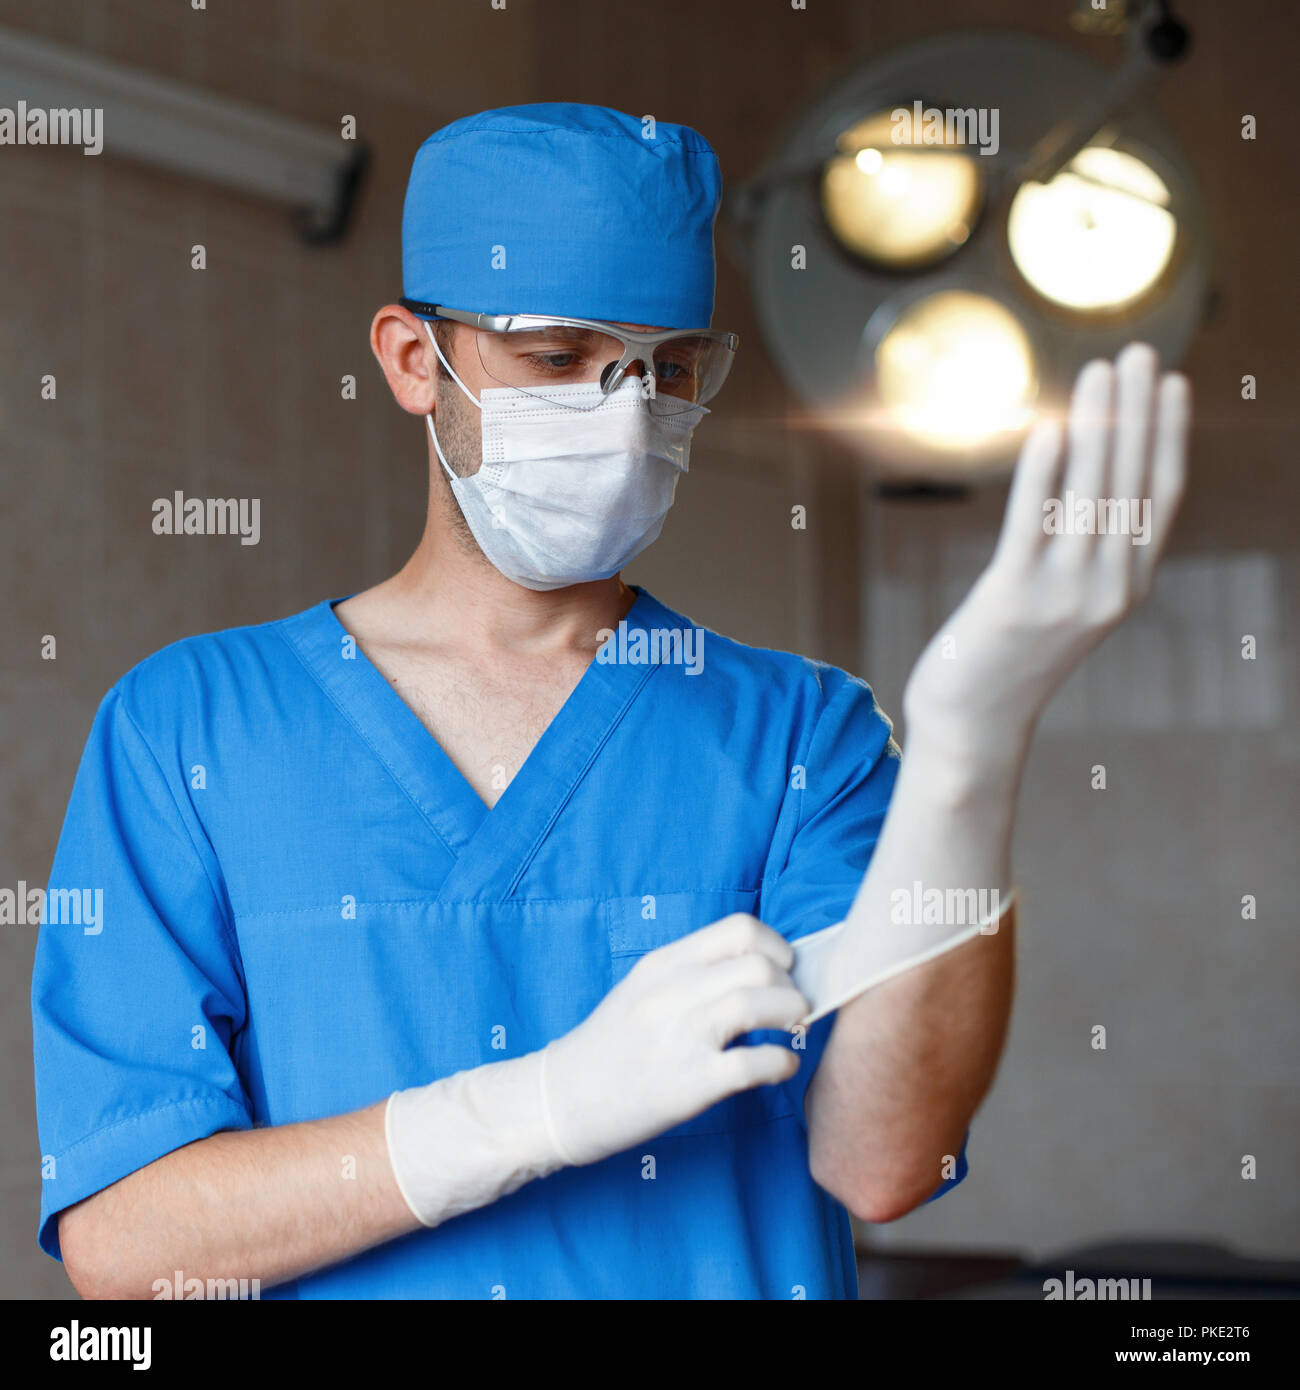 Подготовка хирурга к операции. Хирург обрабатывает руки. Хирургическая операция в перчатках. Хирурги готовятся к операции.